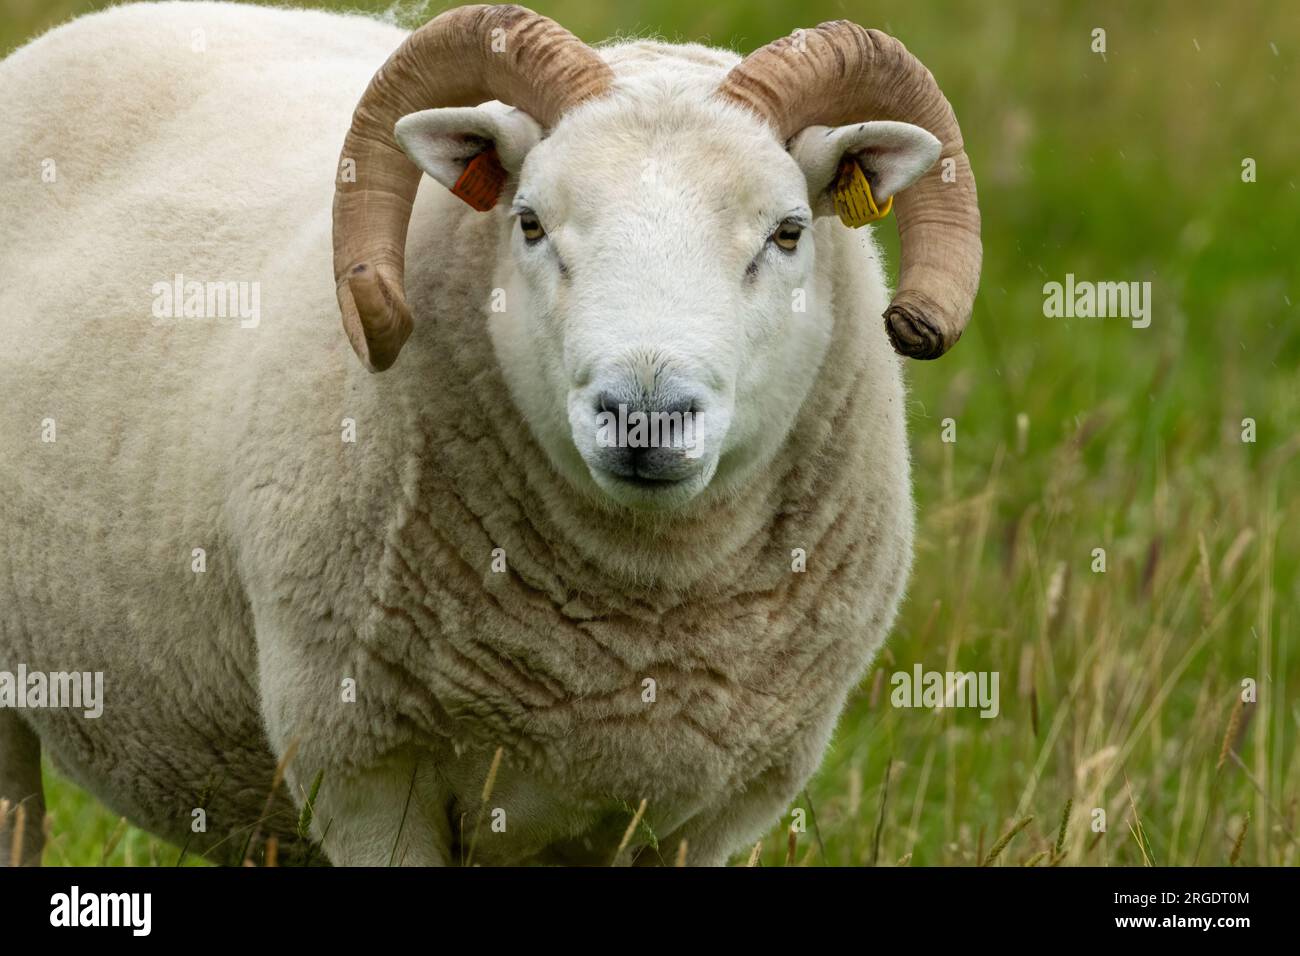 Grandi pecore bianche con corna in un campo verde Foto Stock